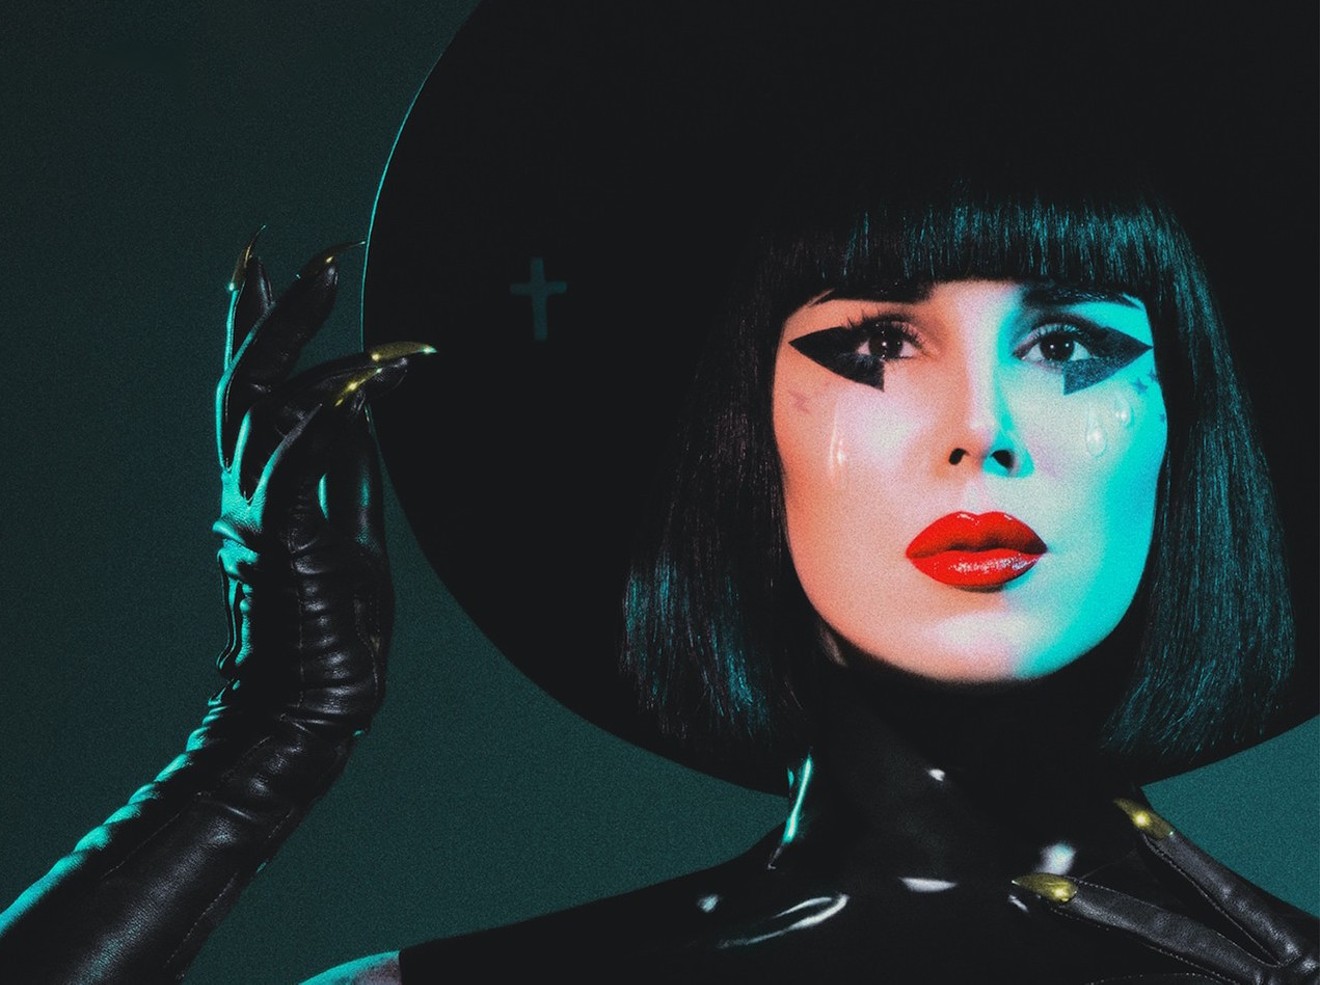 Kat Von D brings her unique brand of goth pop to The Van Buren on Monday, September 27, 2021.